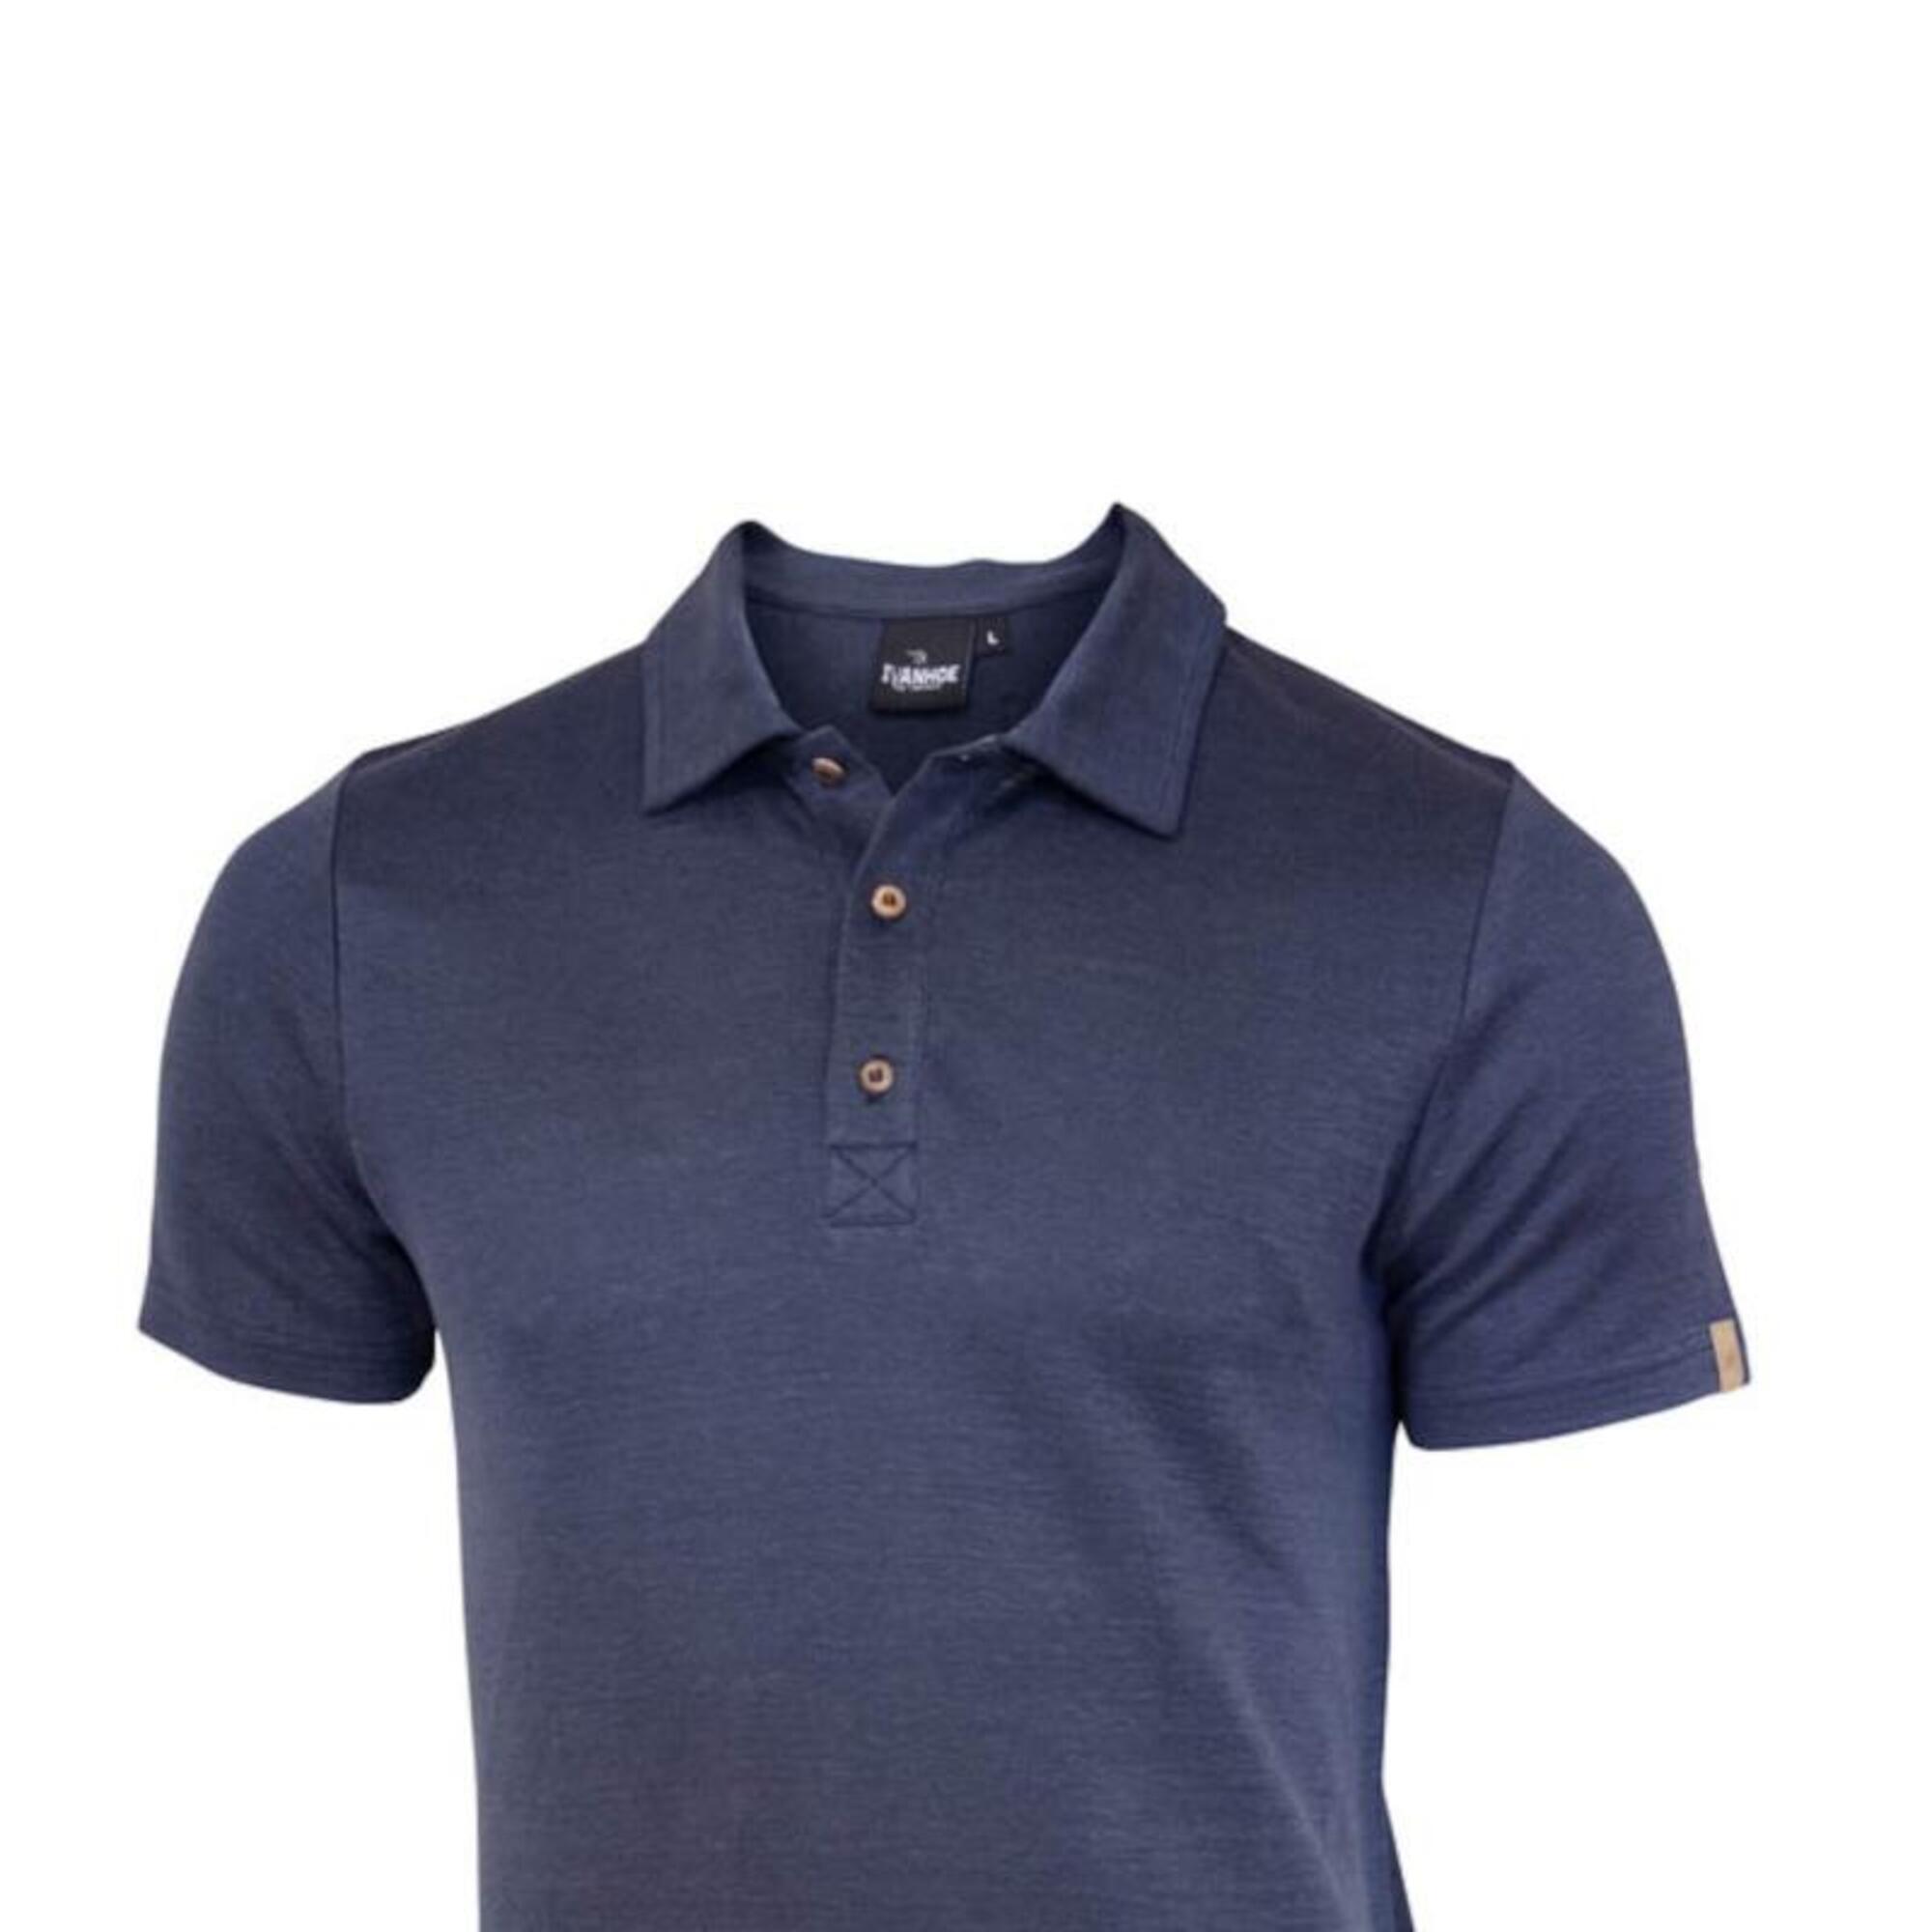 Poloshirt GY Seth Steelblue für Herren aus 100% Leinen - Blau